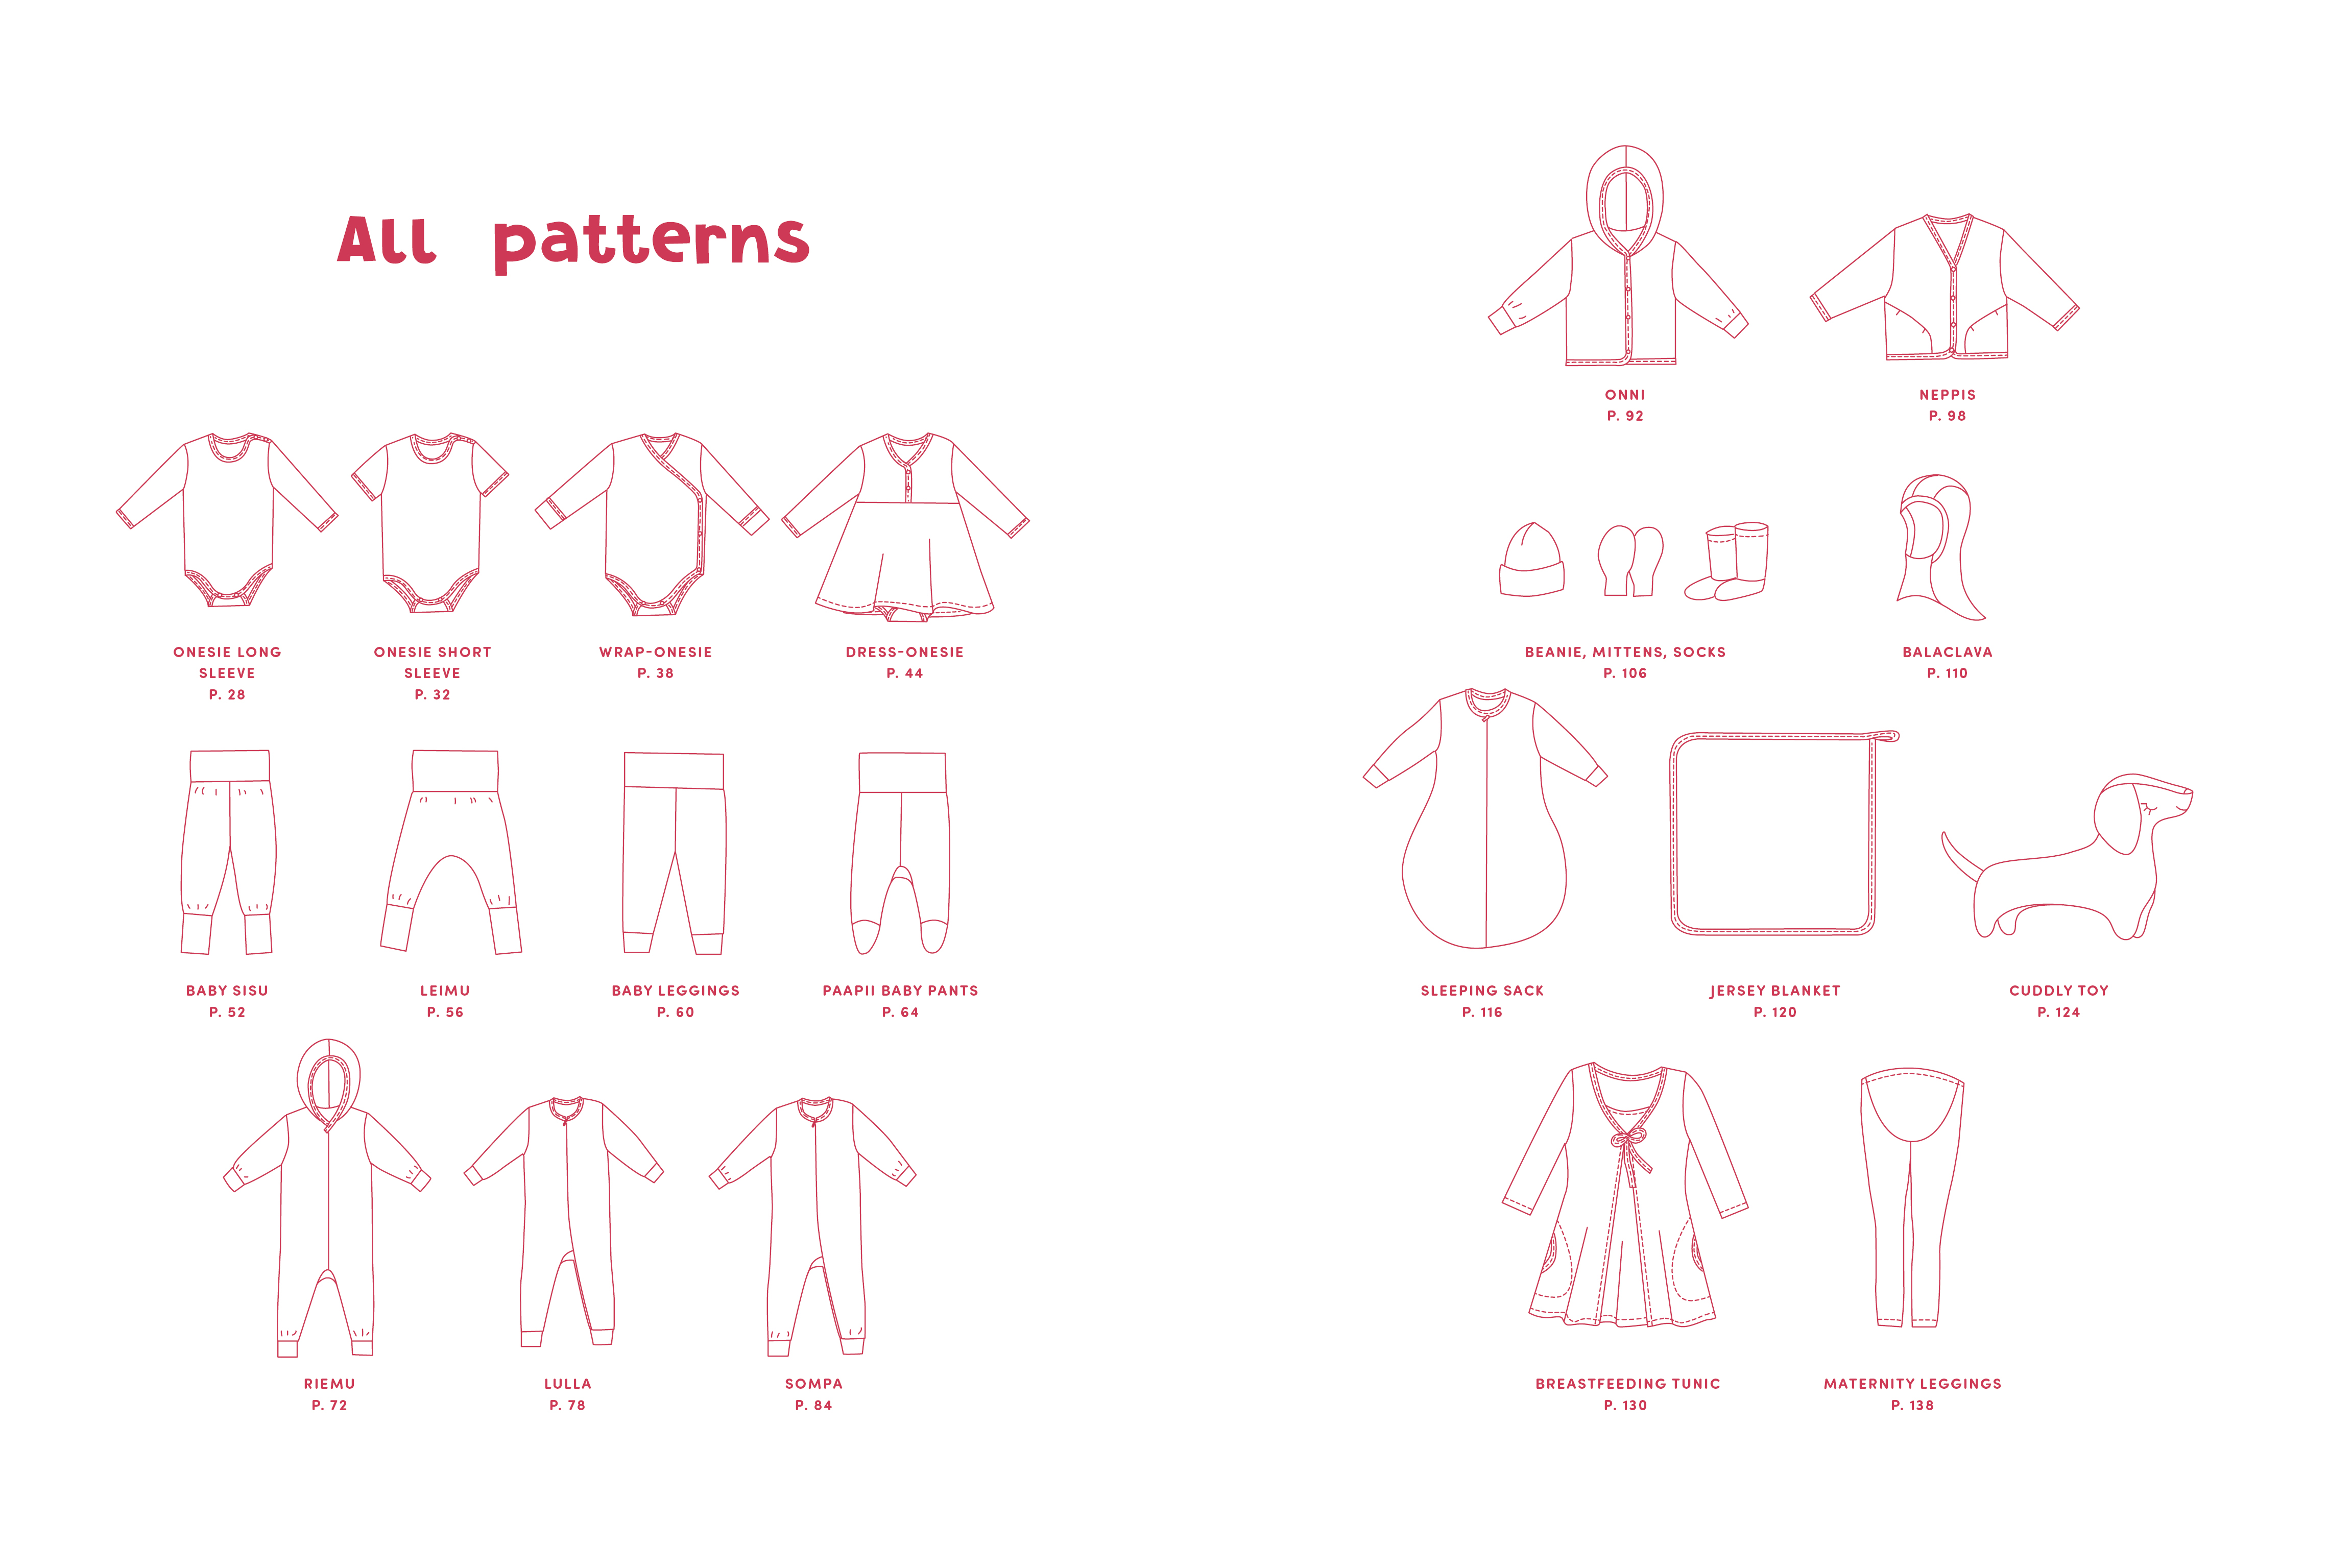 PaaPii's Pattern Book for Babies (in het Engels) - Paapii Design